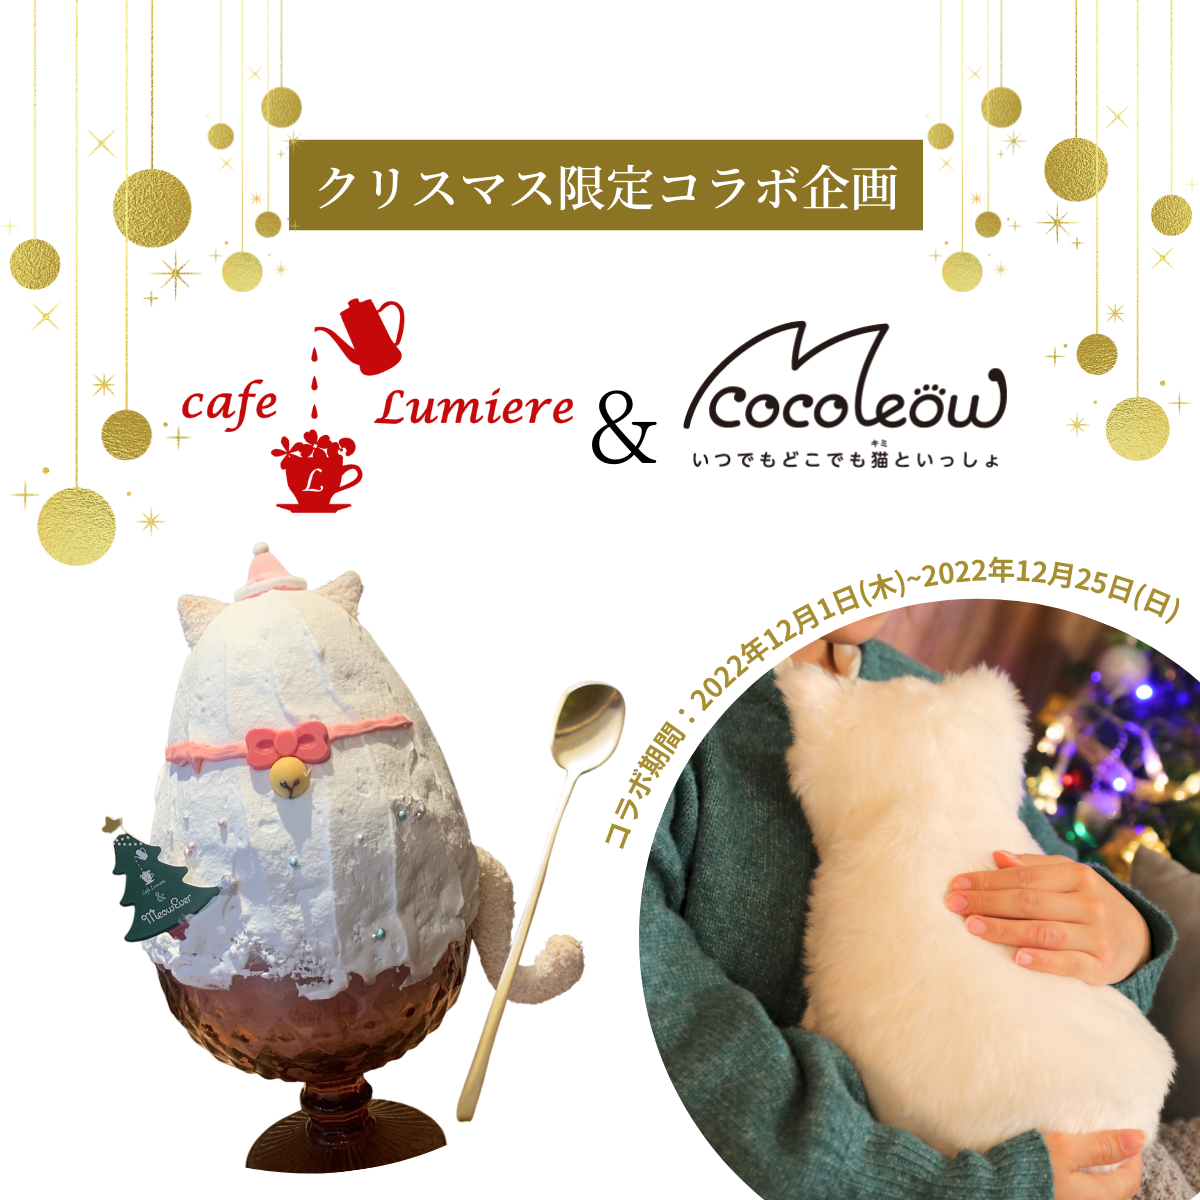 白猫ミャウエバーが、吉祥寺のかき氷カフェ「cafe Lumiere」とコラボ！ミャウ氷食べに来てね！